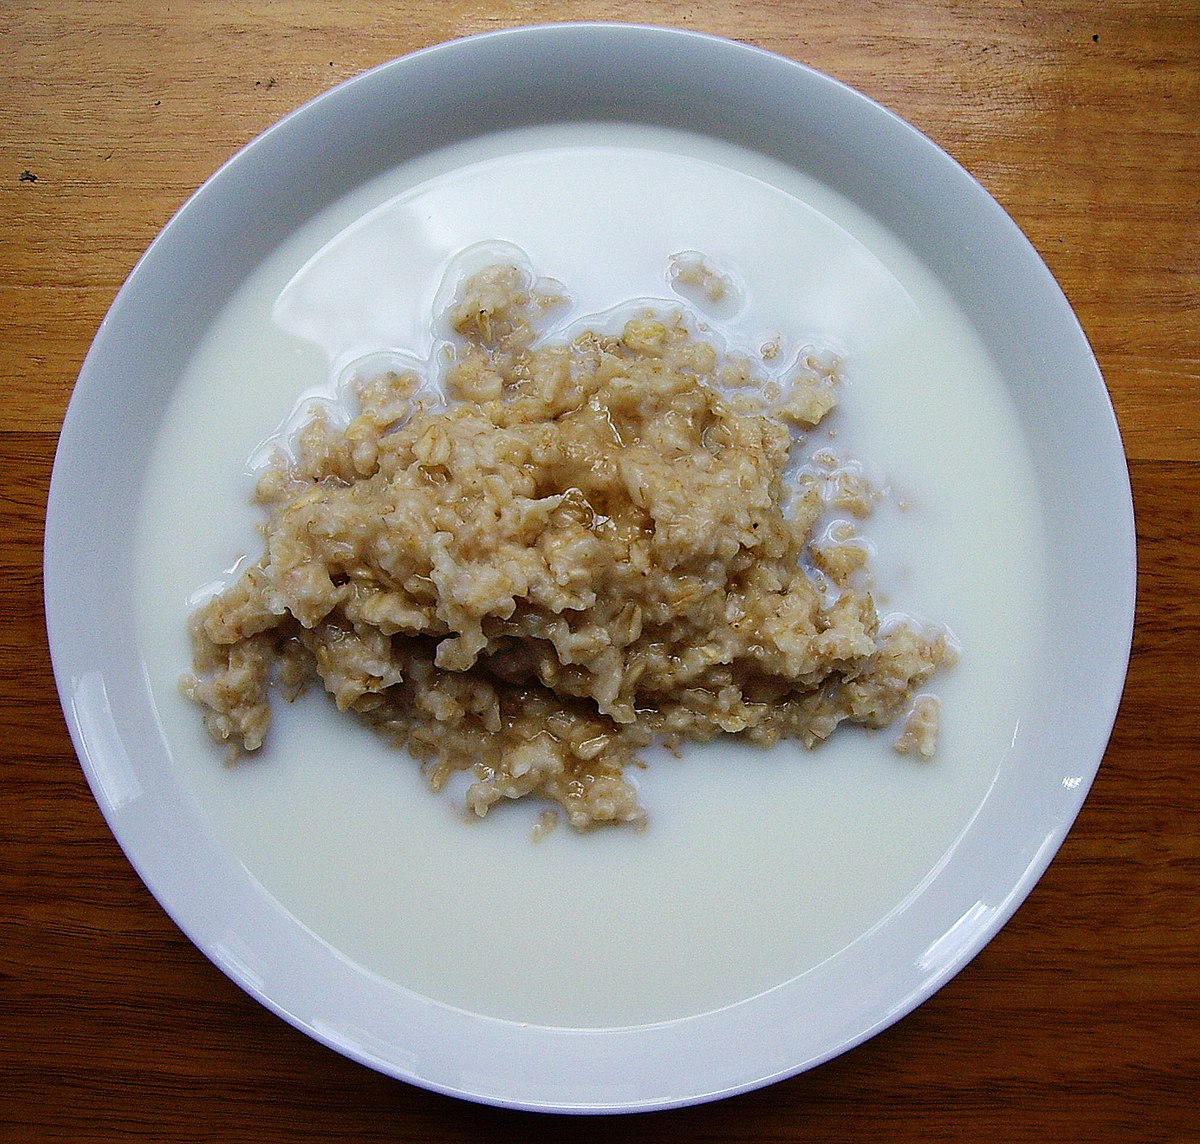 https://upload.wikimedia.org/wikipedia/commons/thumb/c/c9/Porridge.jpg/1200px-Porridge.jpg